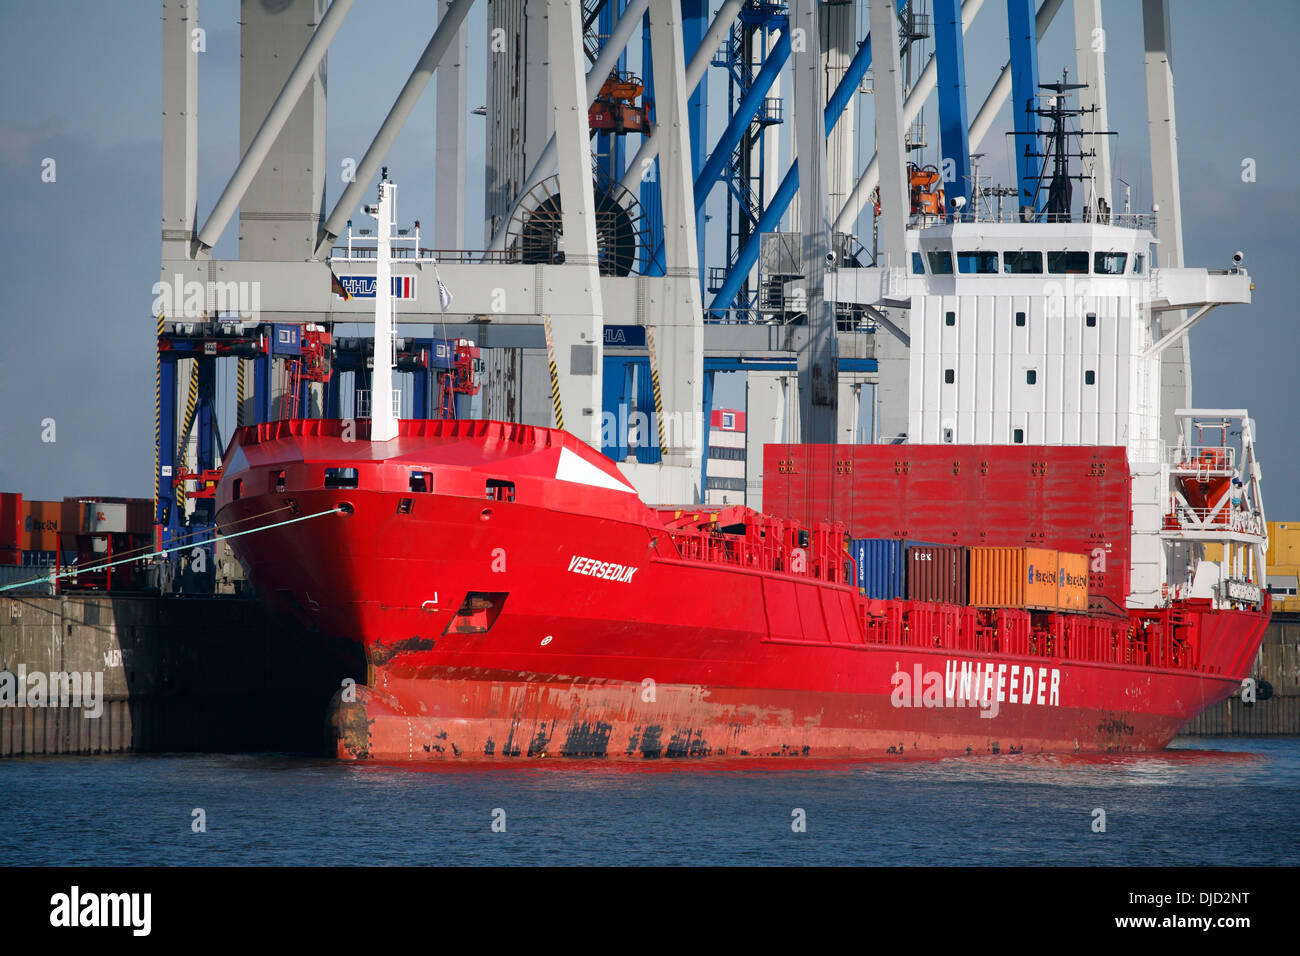 Feederschiff laden am Hafen von Hamburg, Deutschland Stockfoto